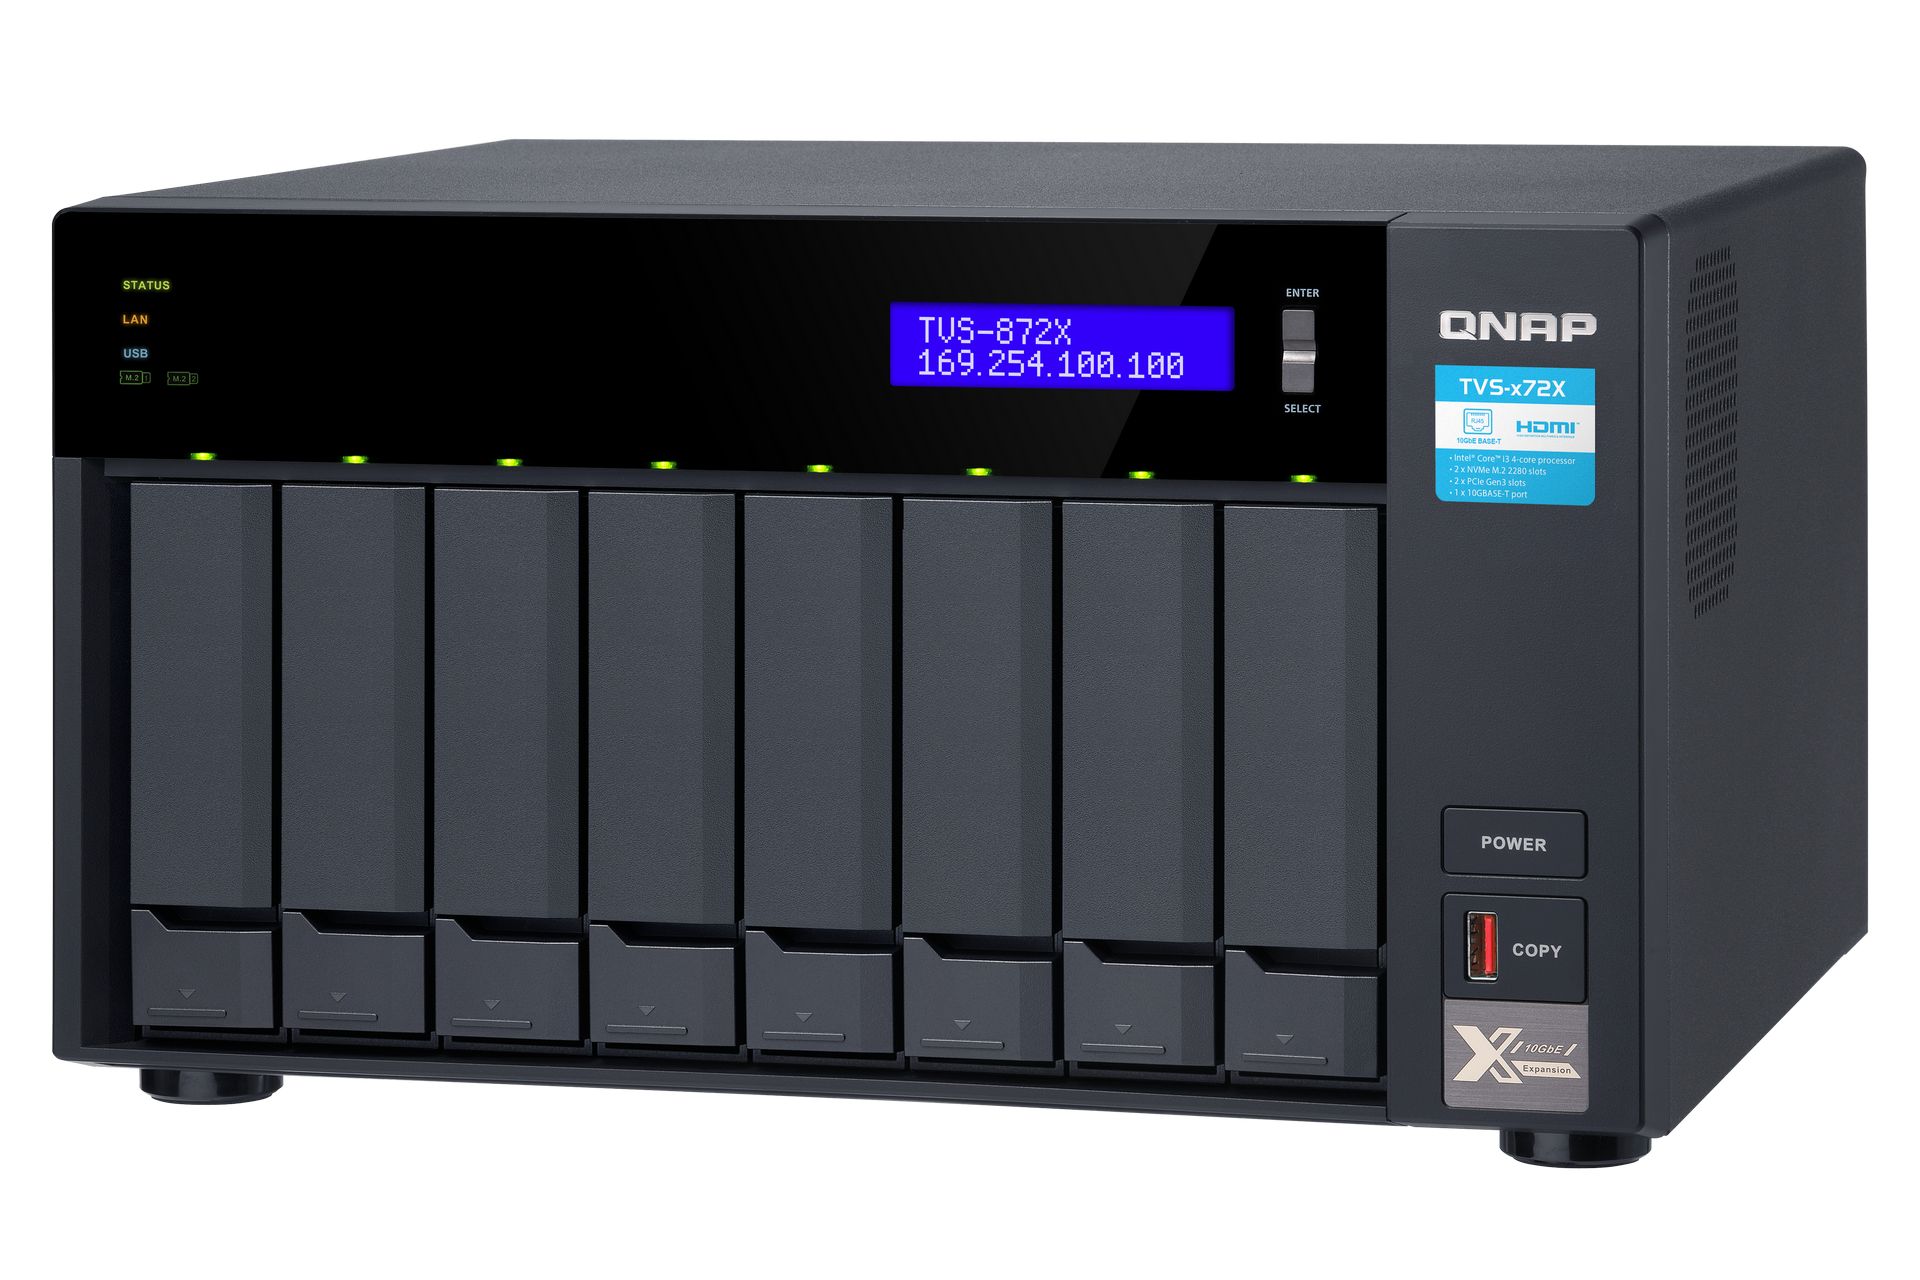 Thiết bị lưu trữ QNAP TVS-872X-i5-8G là một giai pháp hoàn hảo cho việc lưu trữ dữ liệu, bảo vệ bảo mật và truy cập nhanh chóng. Với công nghệ tiên tiến, sản phẩm này giúp bạn thực hiện những công việc đòi hỏi tốc độ cao một cách dễ dàng và hiệu quả. Hãy cùng xem hình ảnh liên quan để trải nghiệm cảm giác tuyệt vời khi sử dụng QNAP TVS-872X-i5-8G.